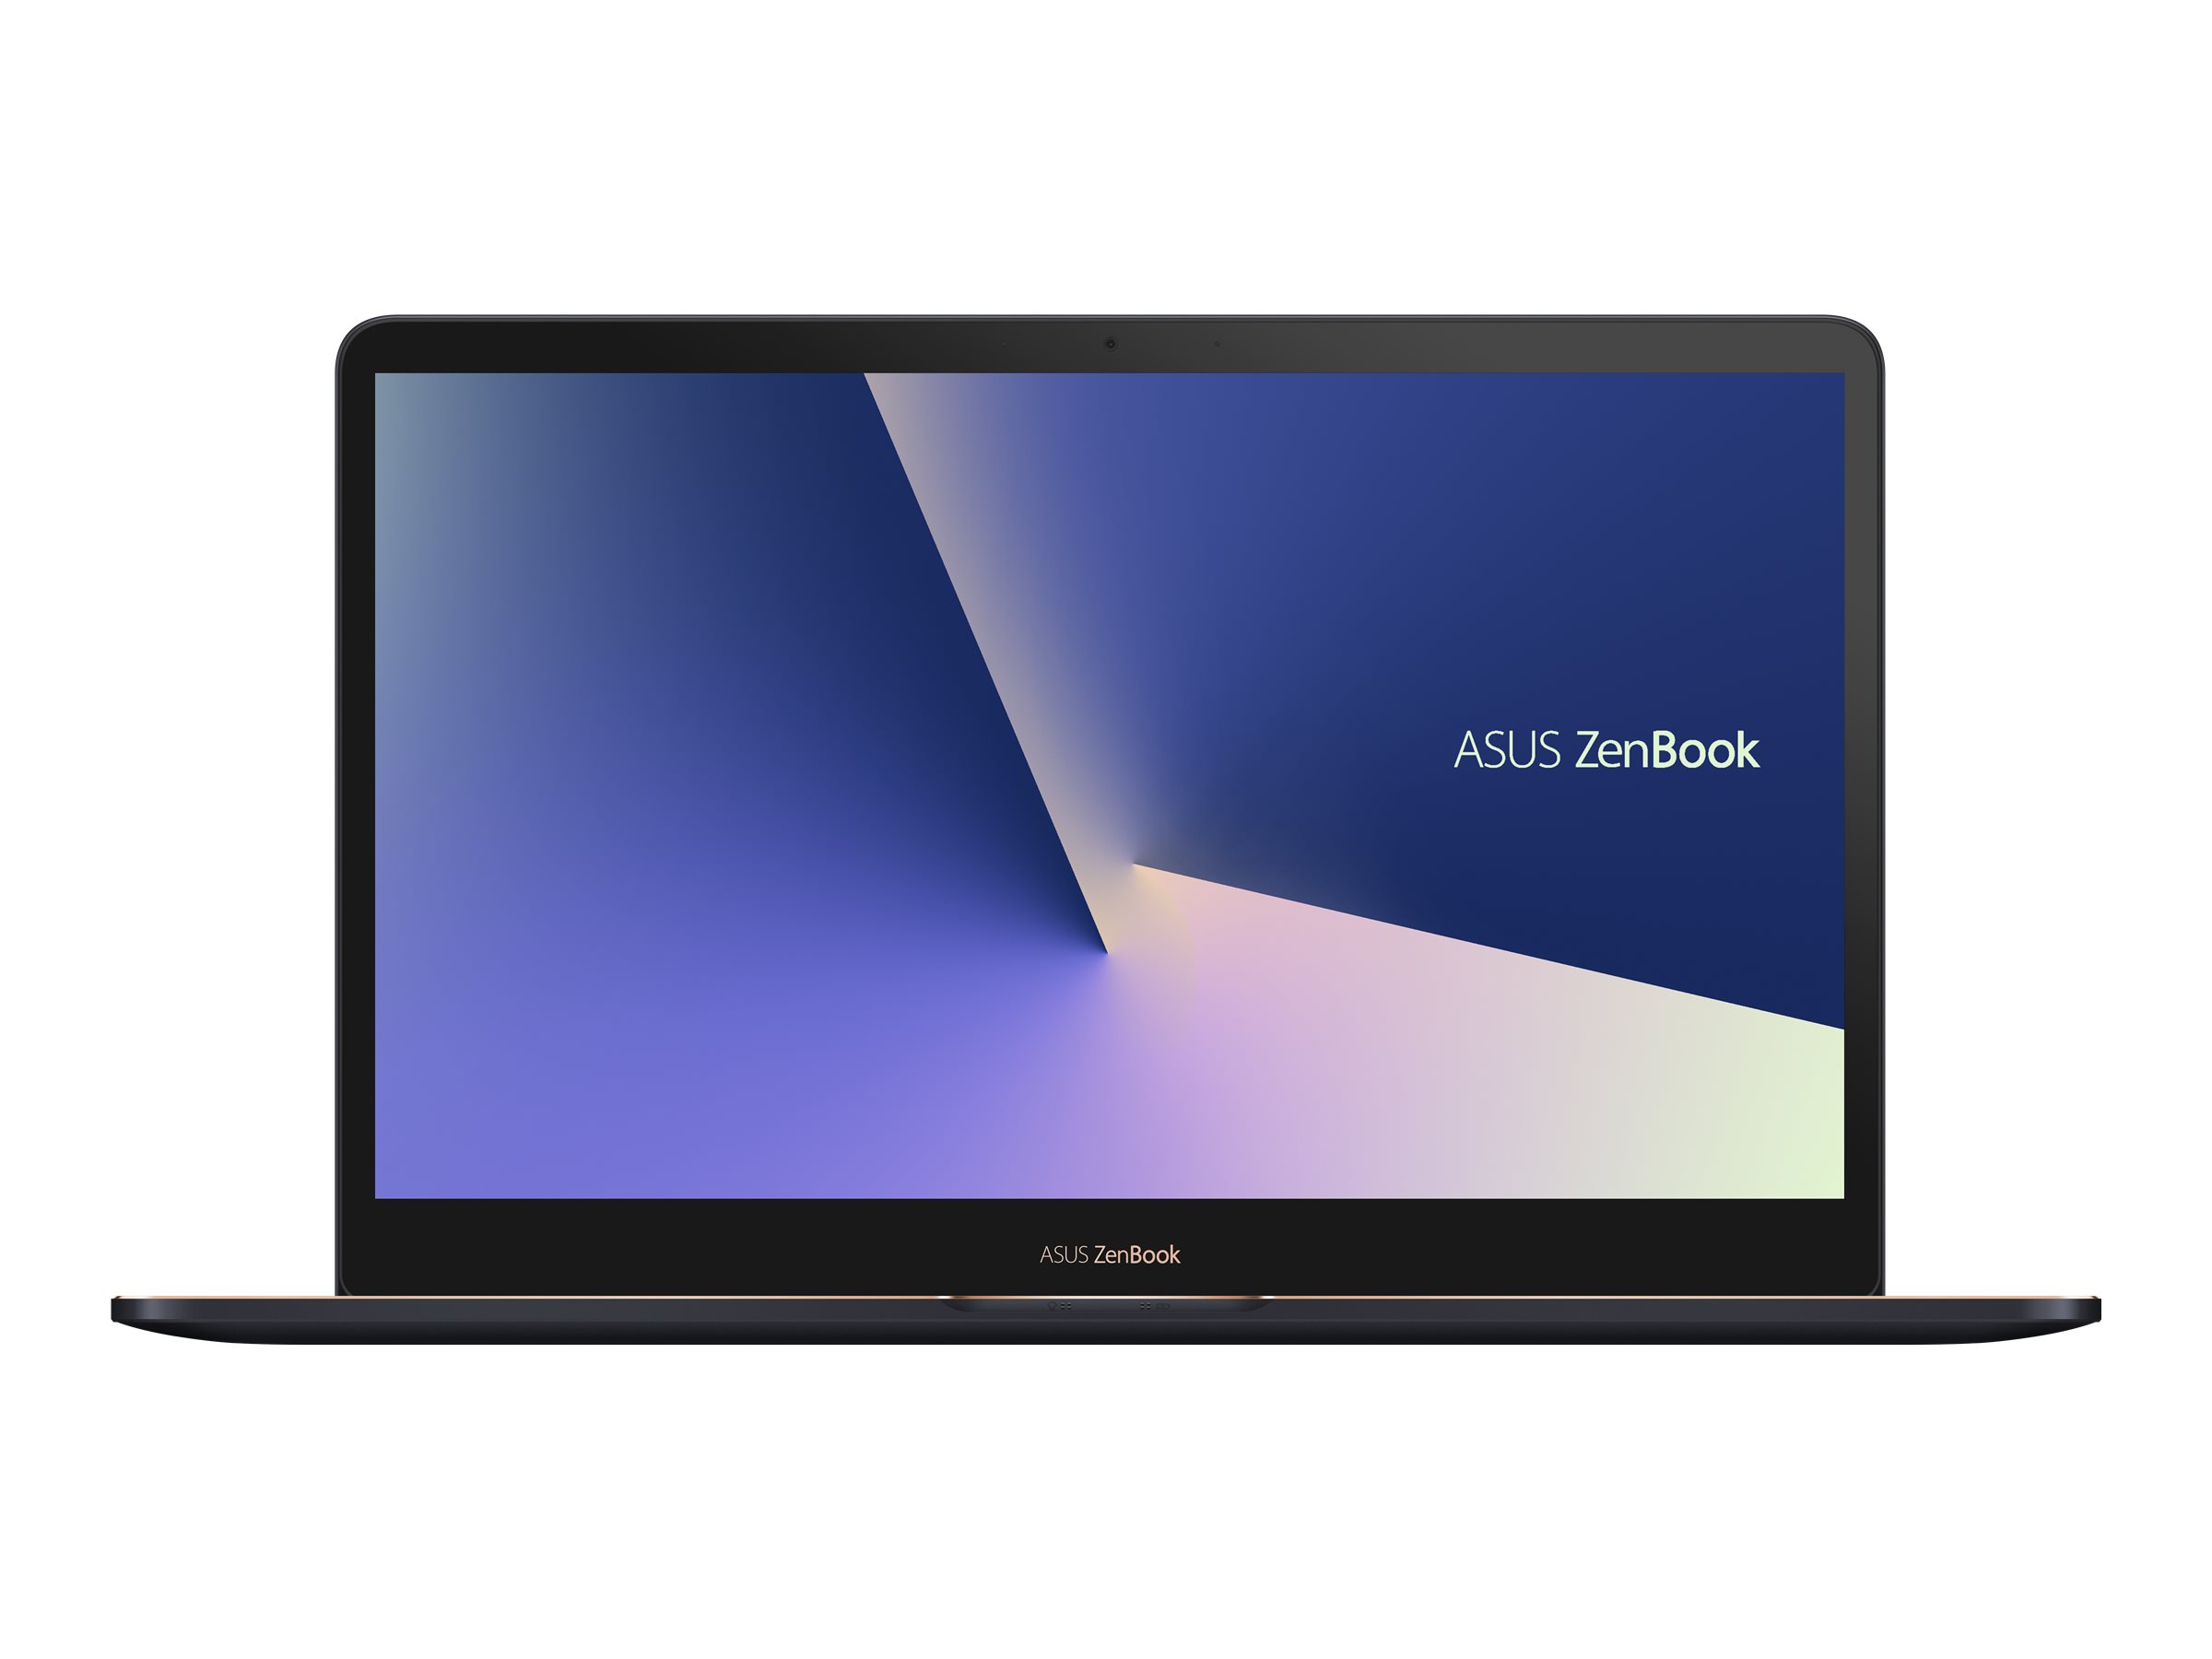 ASUS ZenBook Pro 15 UX580GD (E2036T)